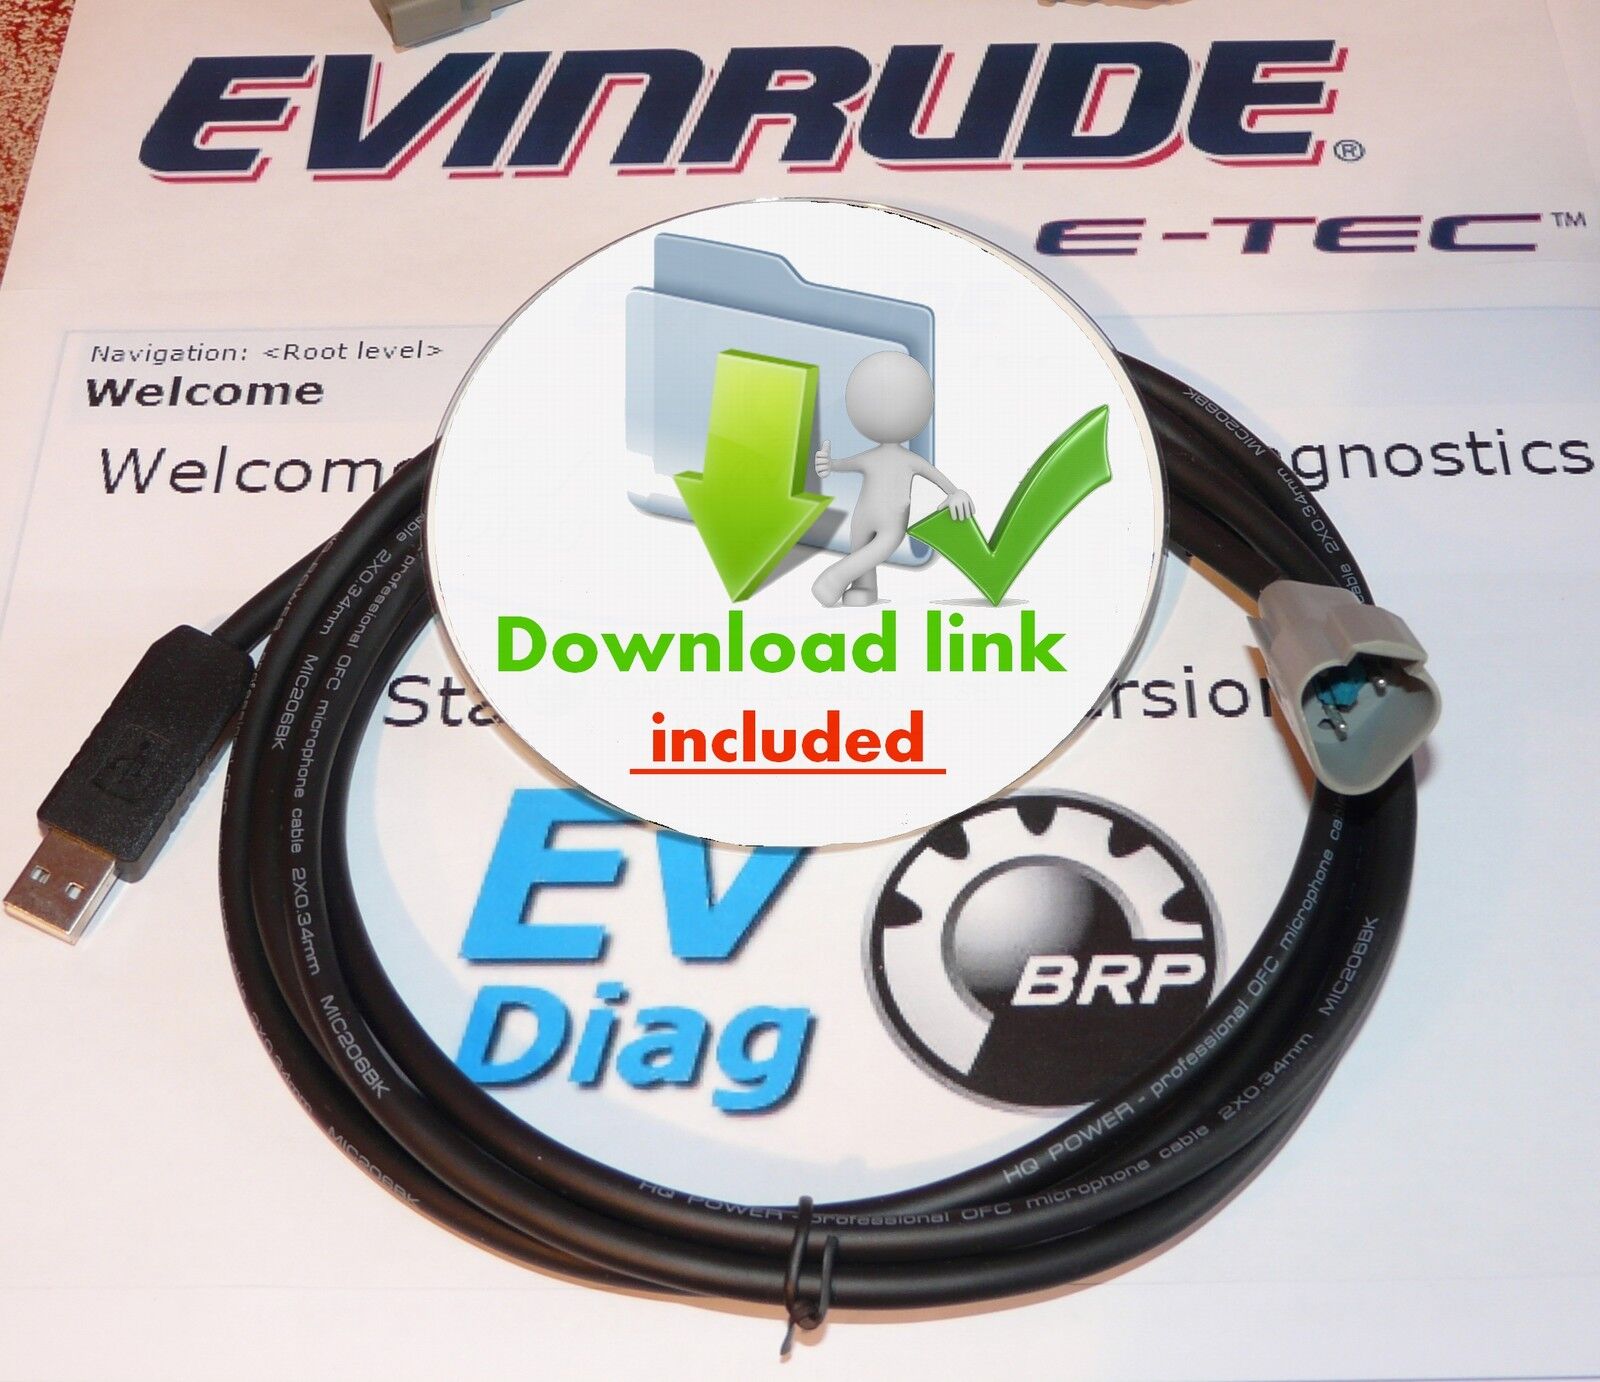 USB EVINRUDE E-TEC  ETEC diagnostic cable SET, with USB cable (FICHT, Johnson )